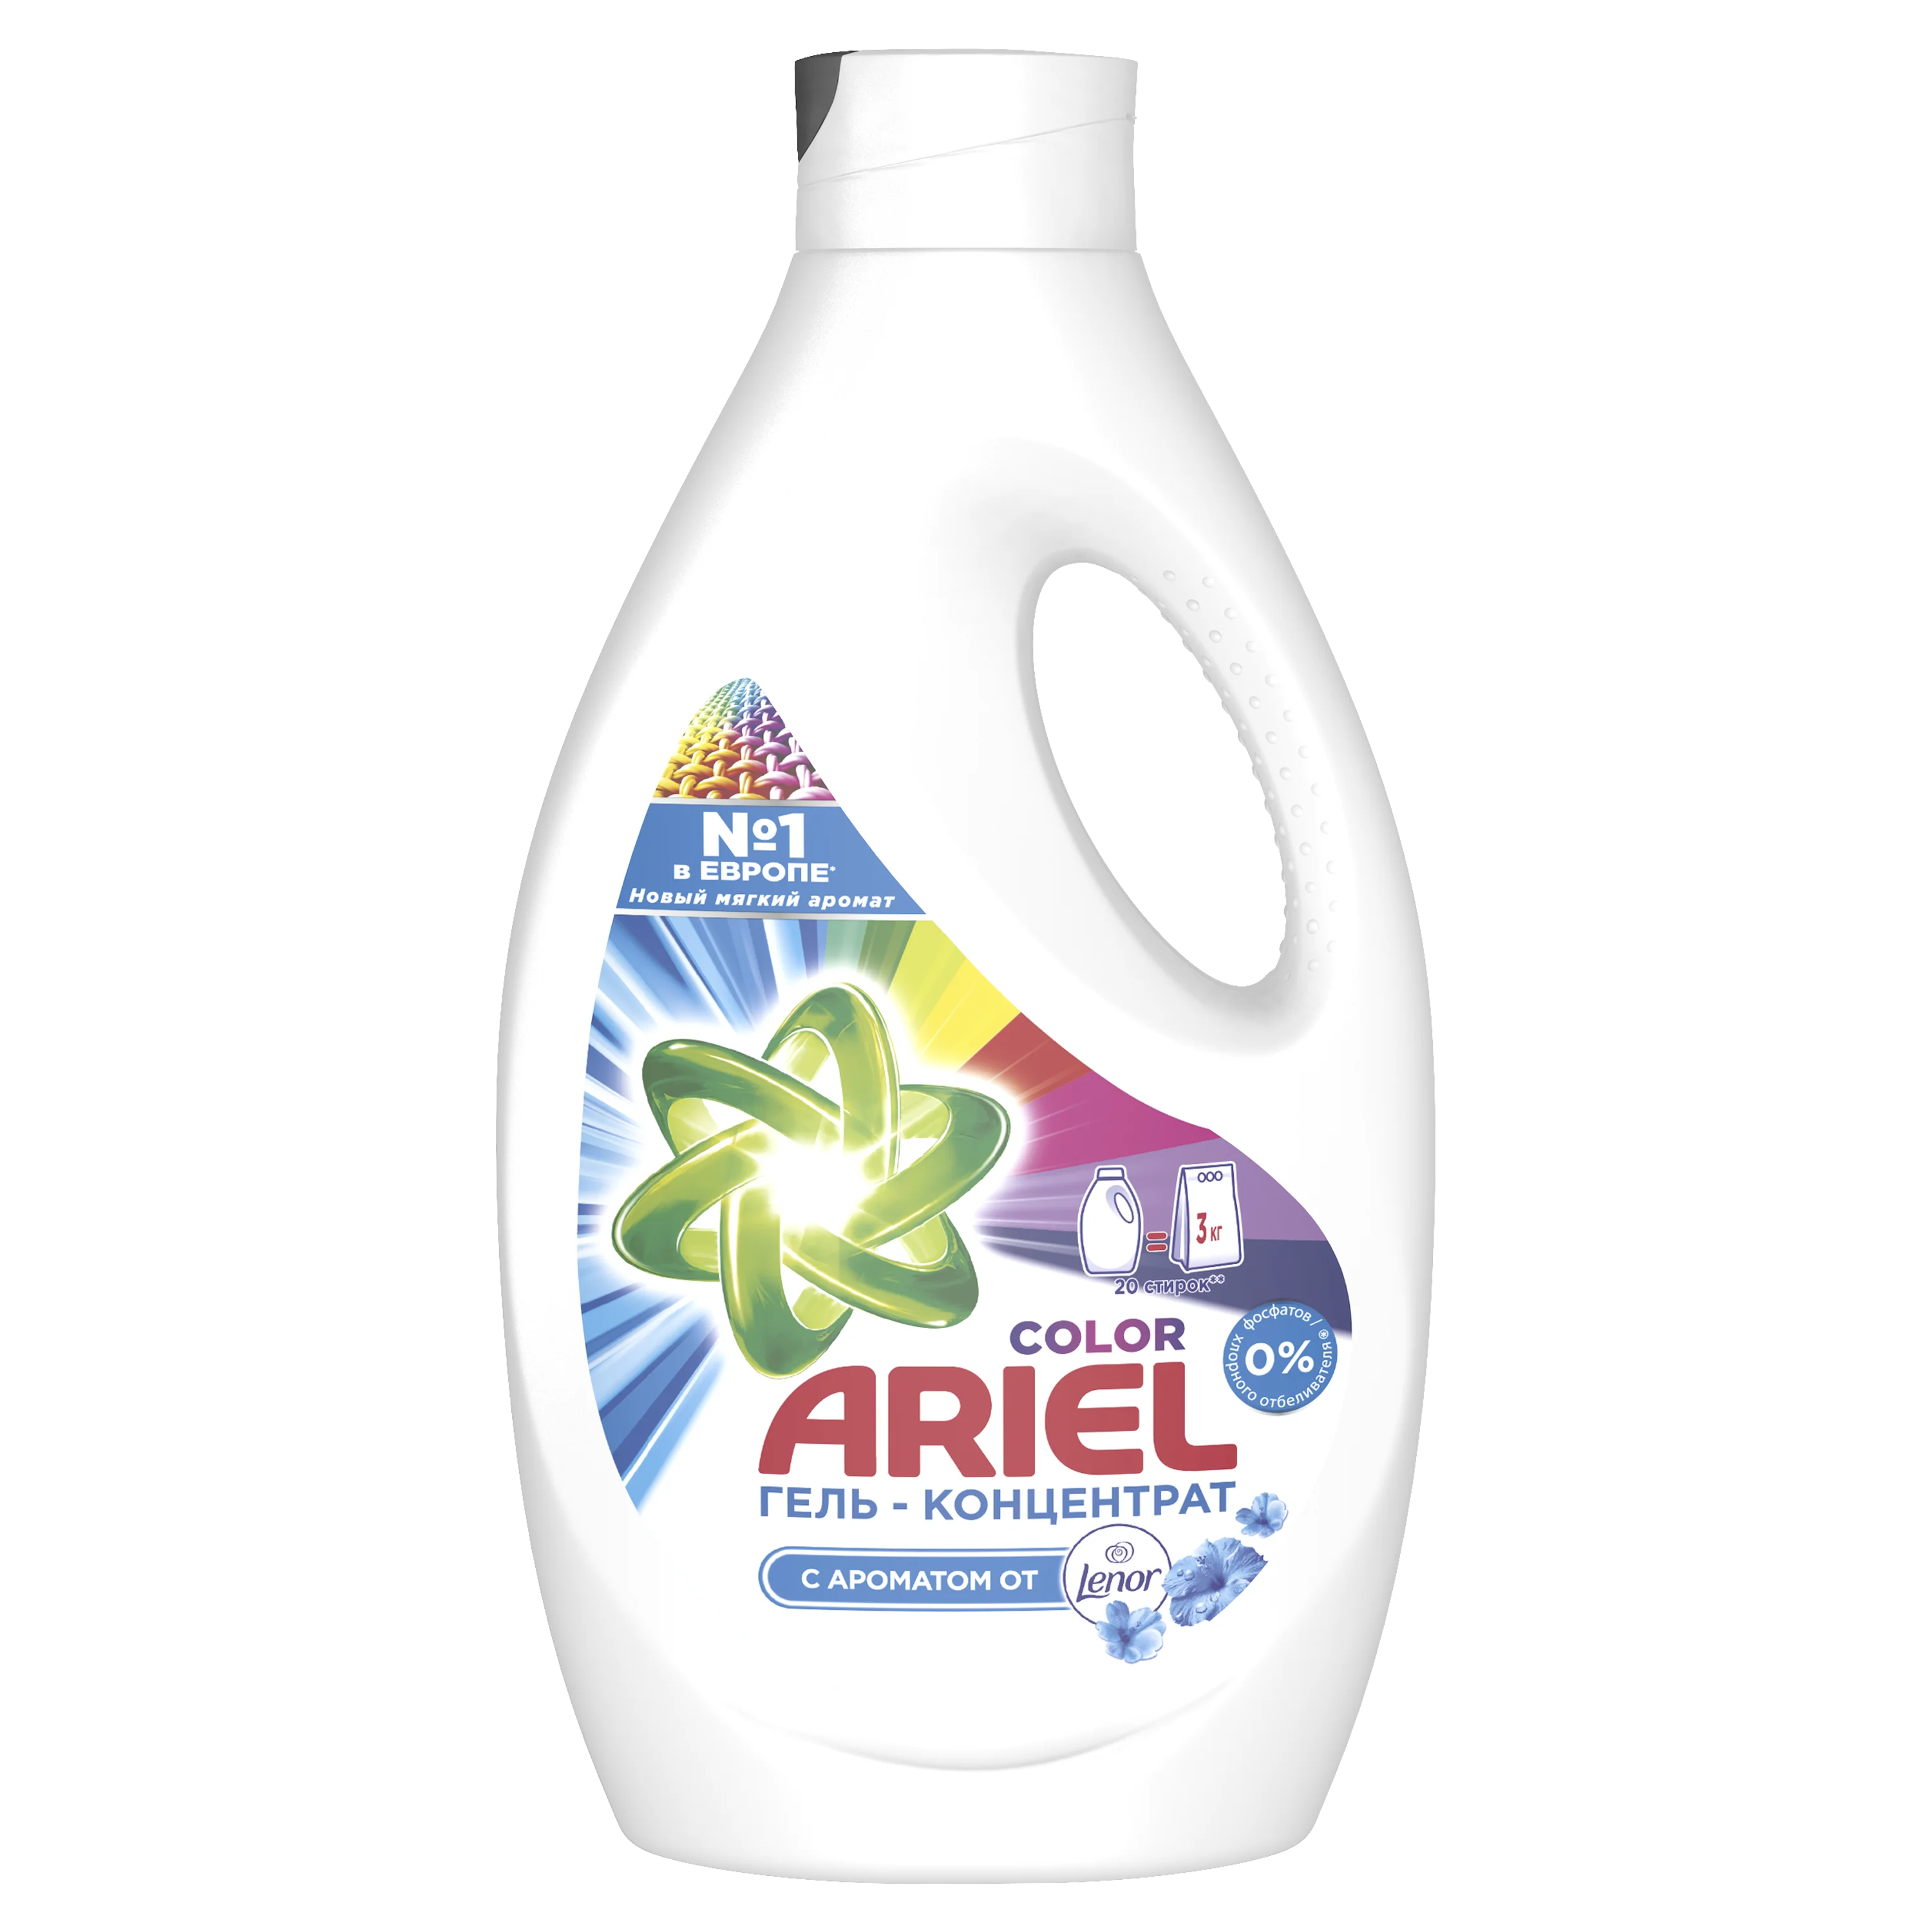 Ariel Touch Of Lenor Fresh gel lavant